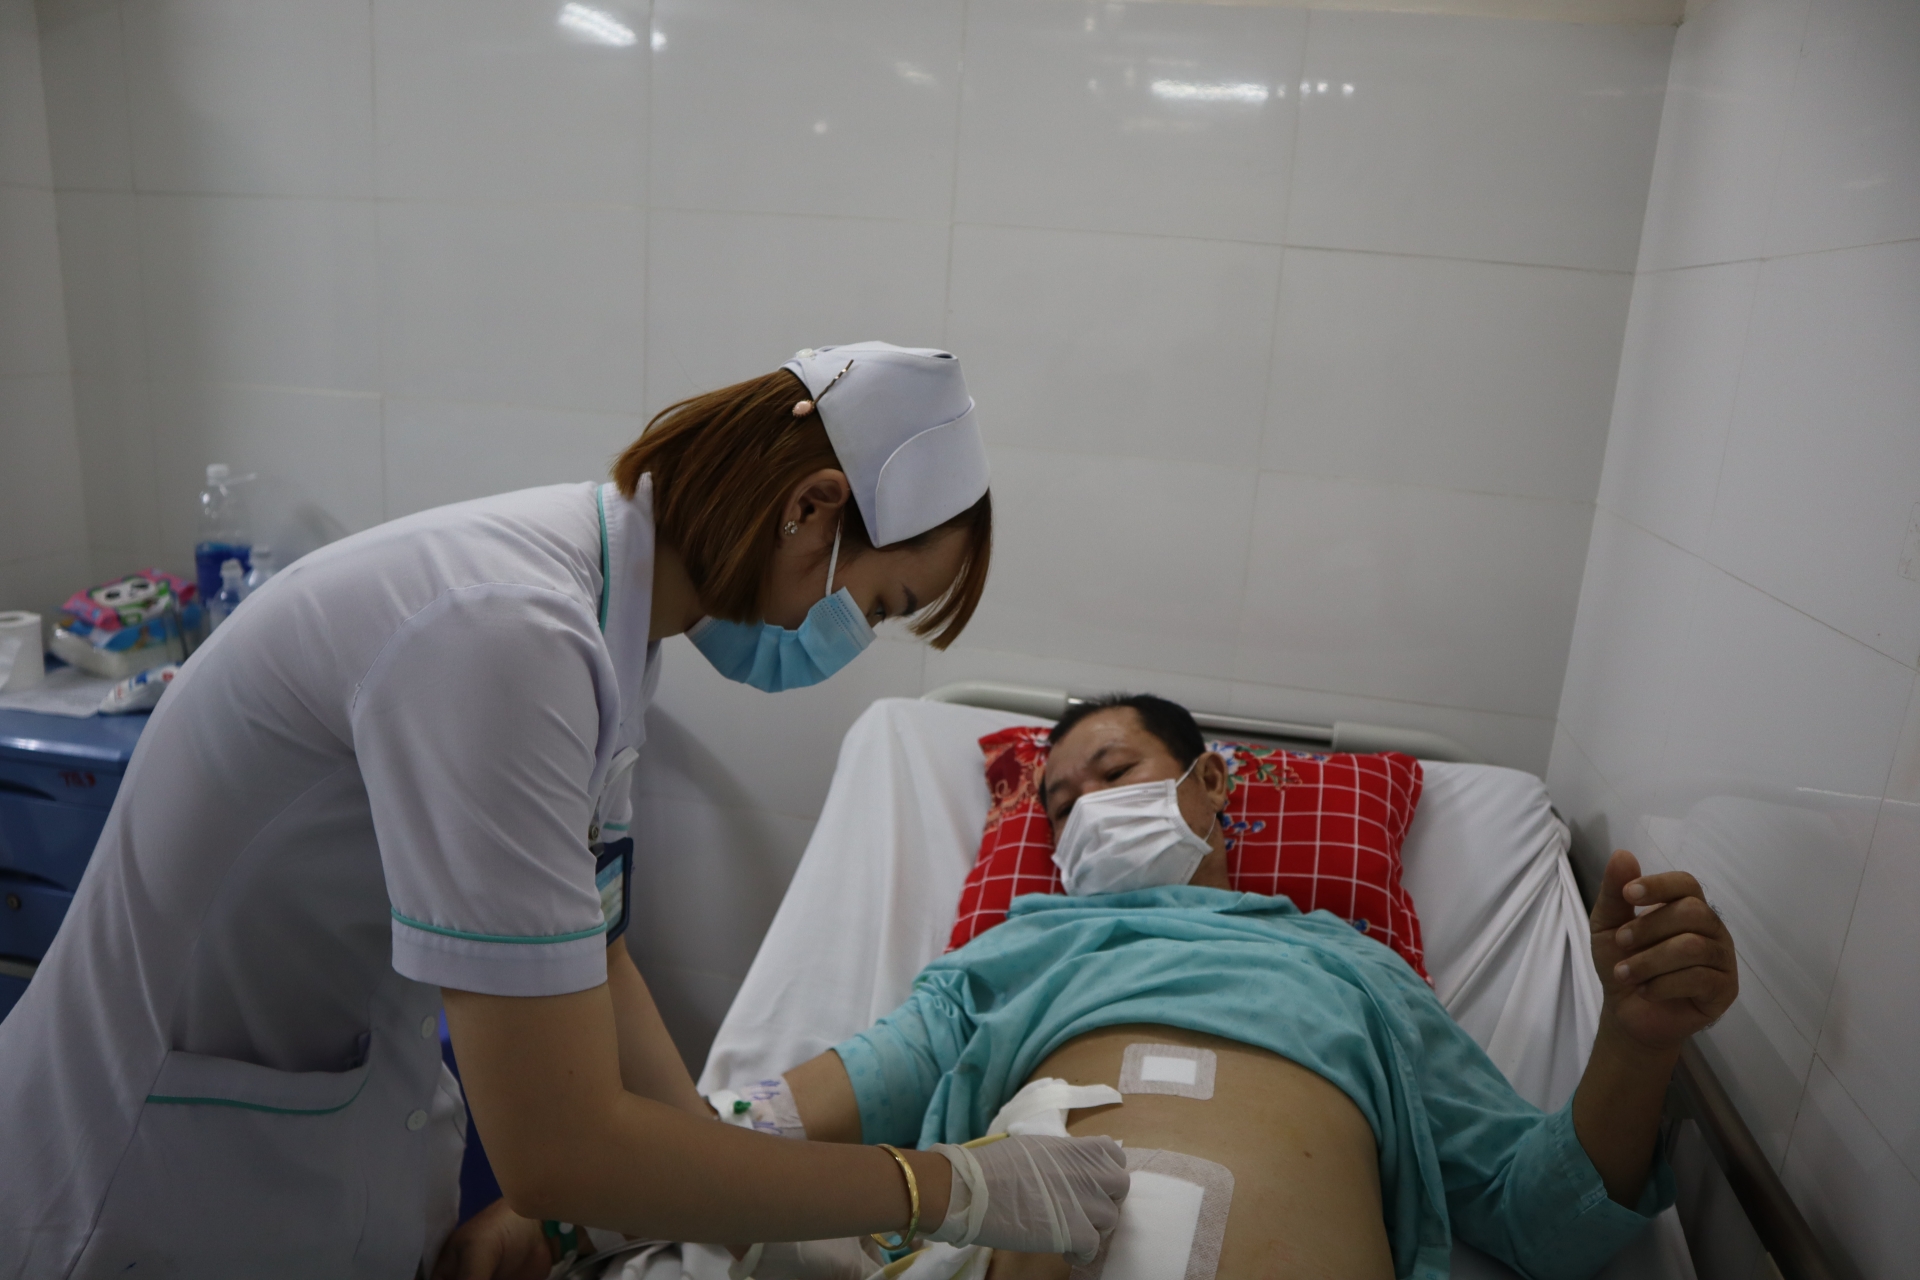 TP. Hồ Chí Minh: Phẫu thuật nội soi lấy 15 lít dịch mật  trong ổ bụng